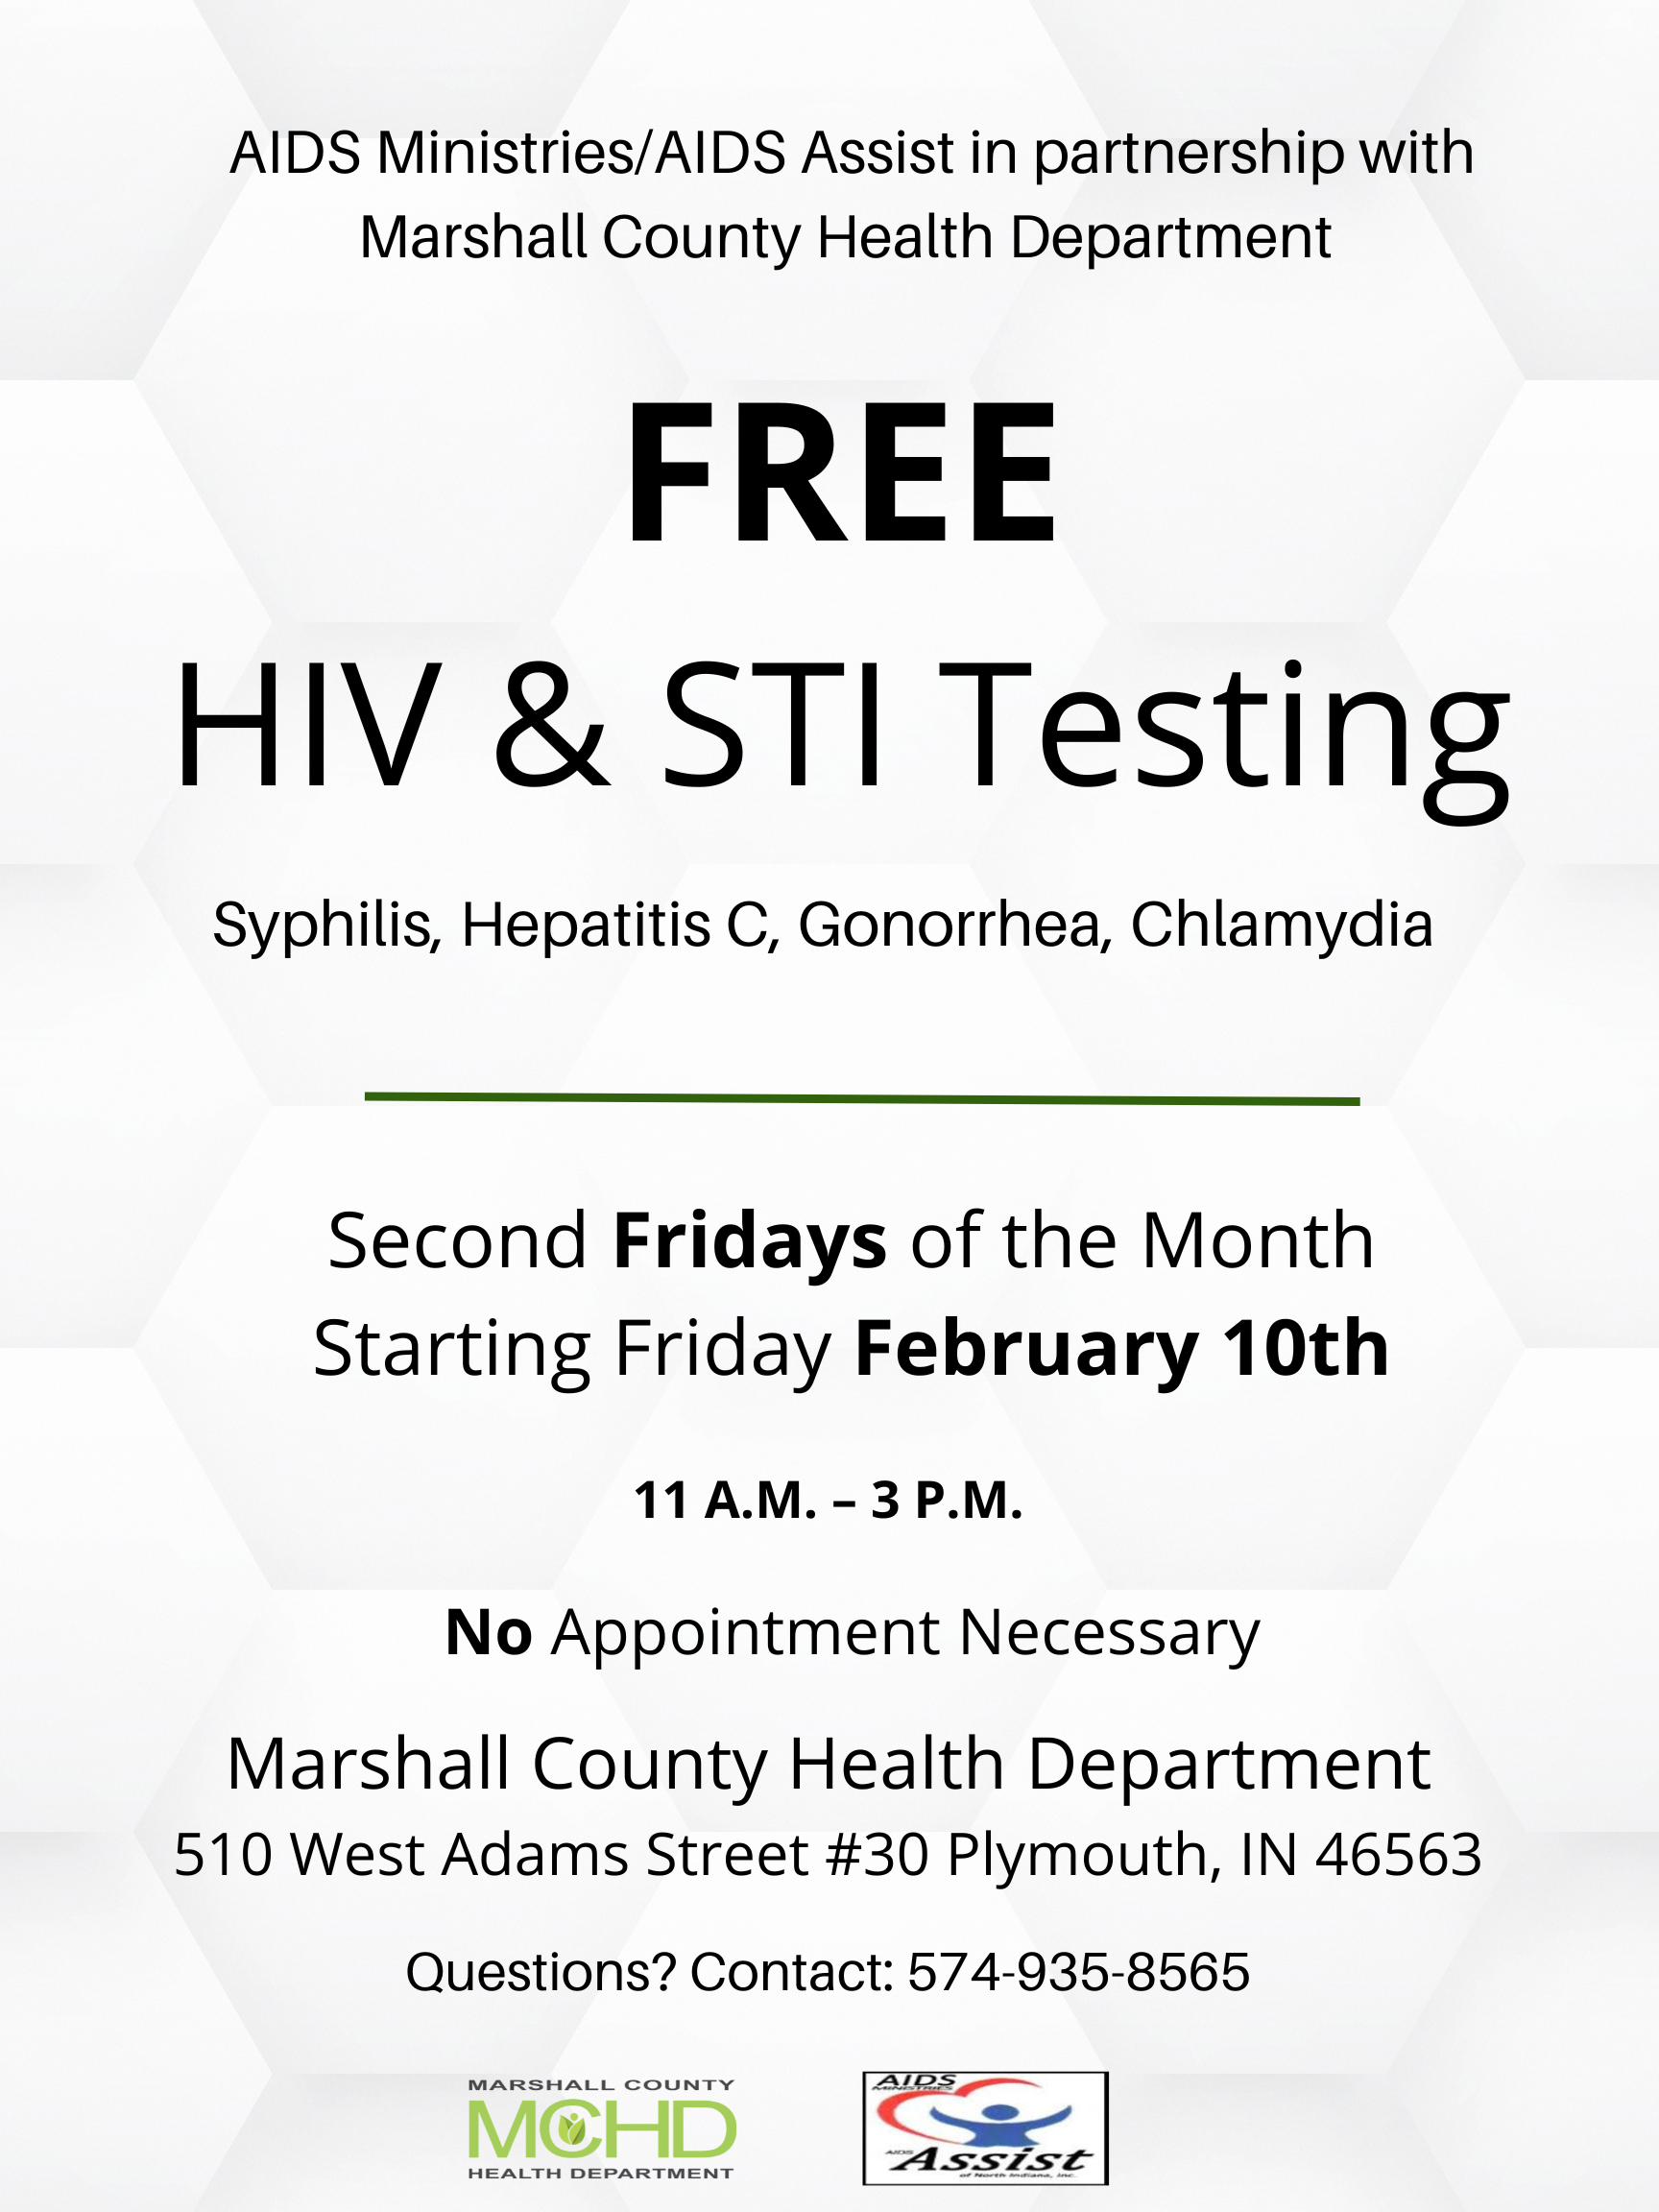 FREE HIV Testing